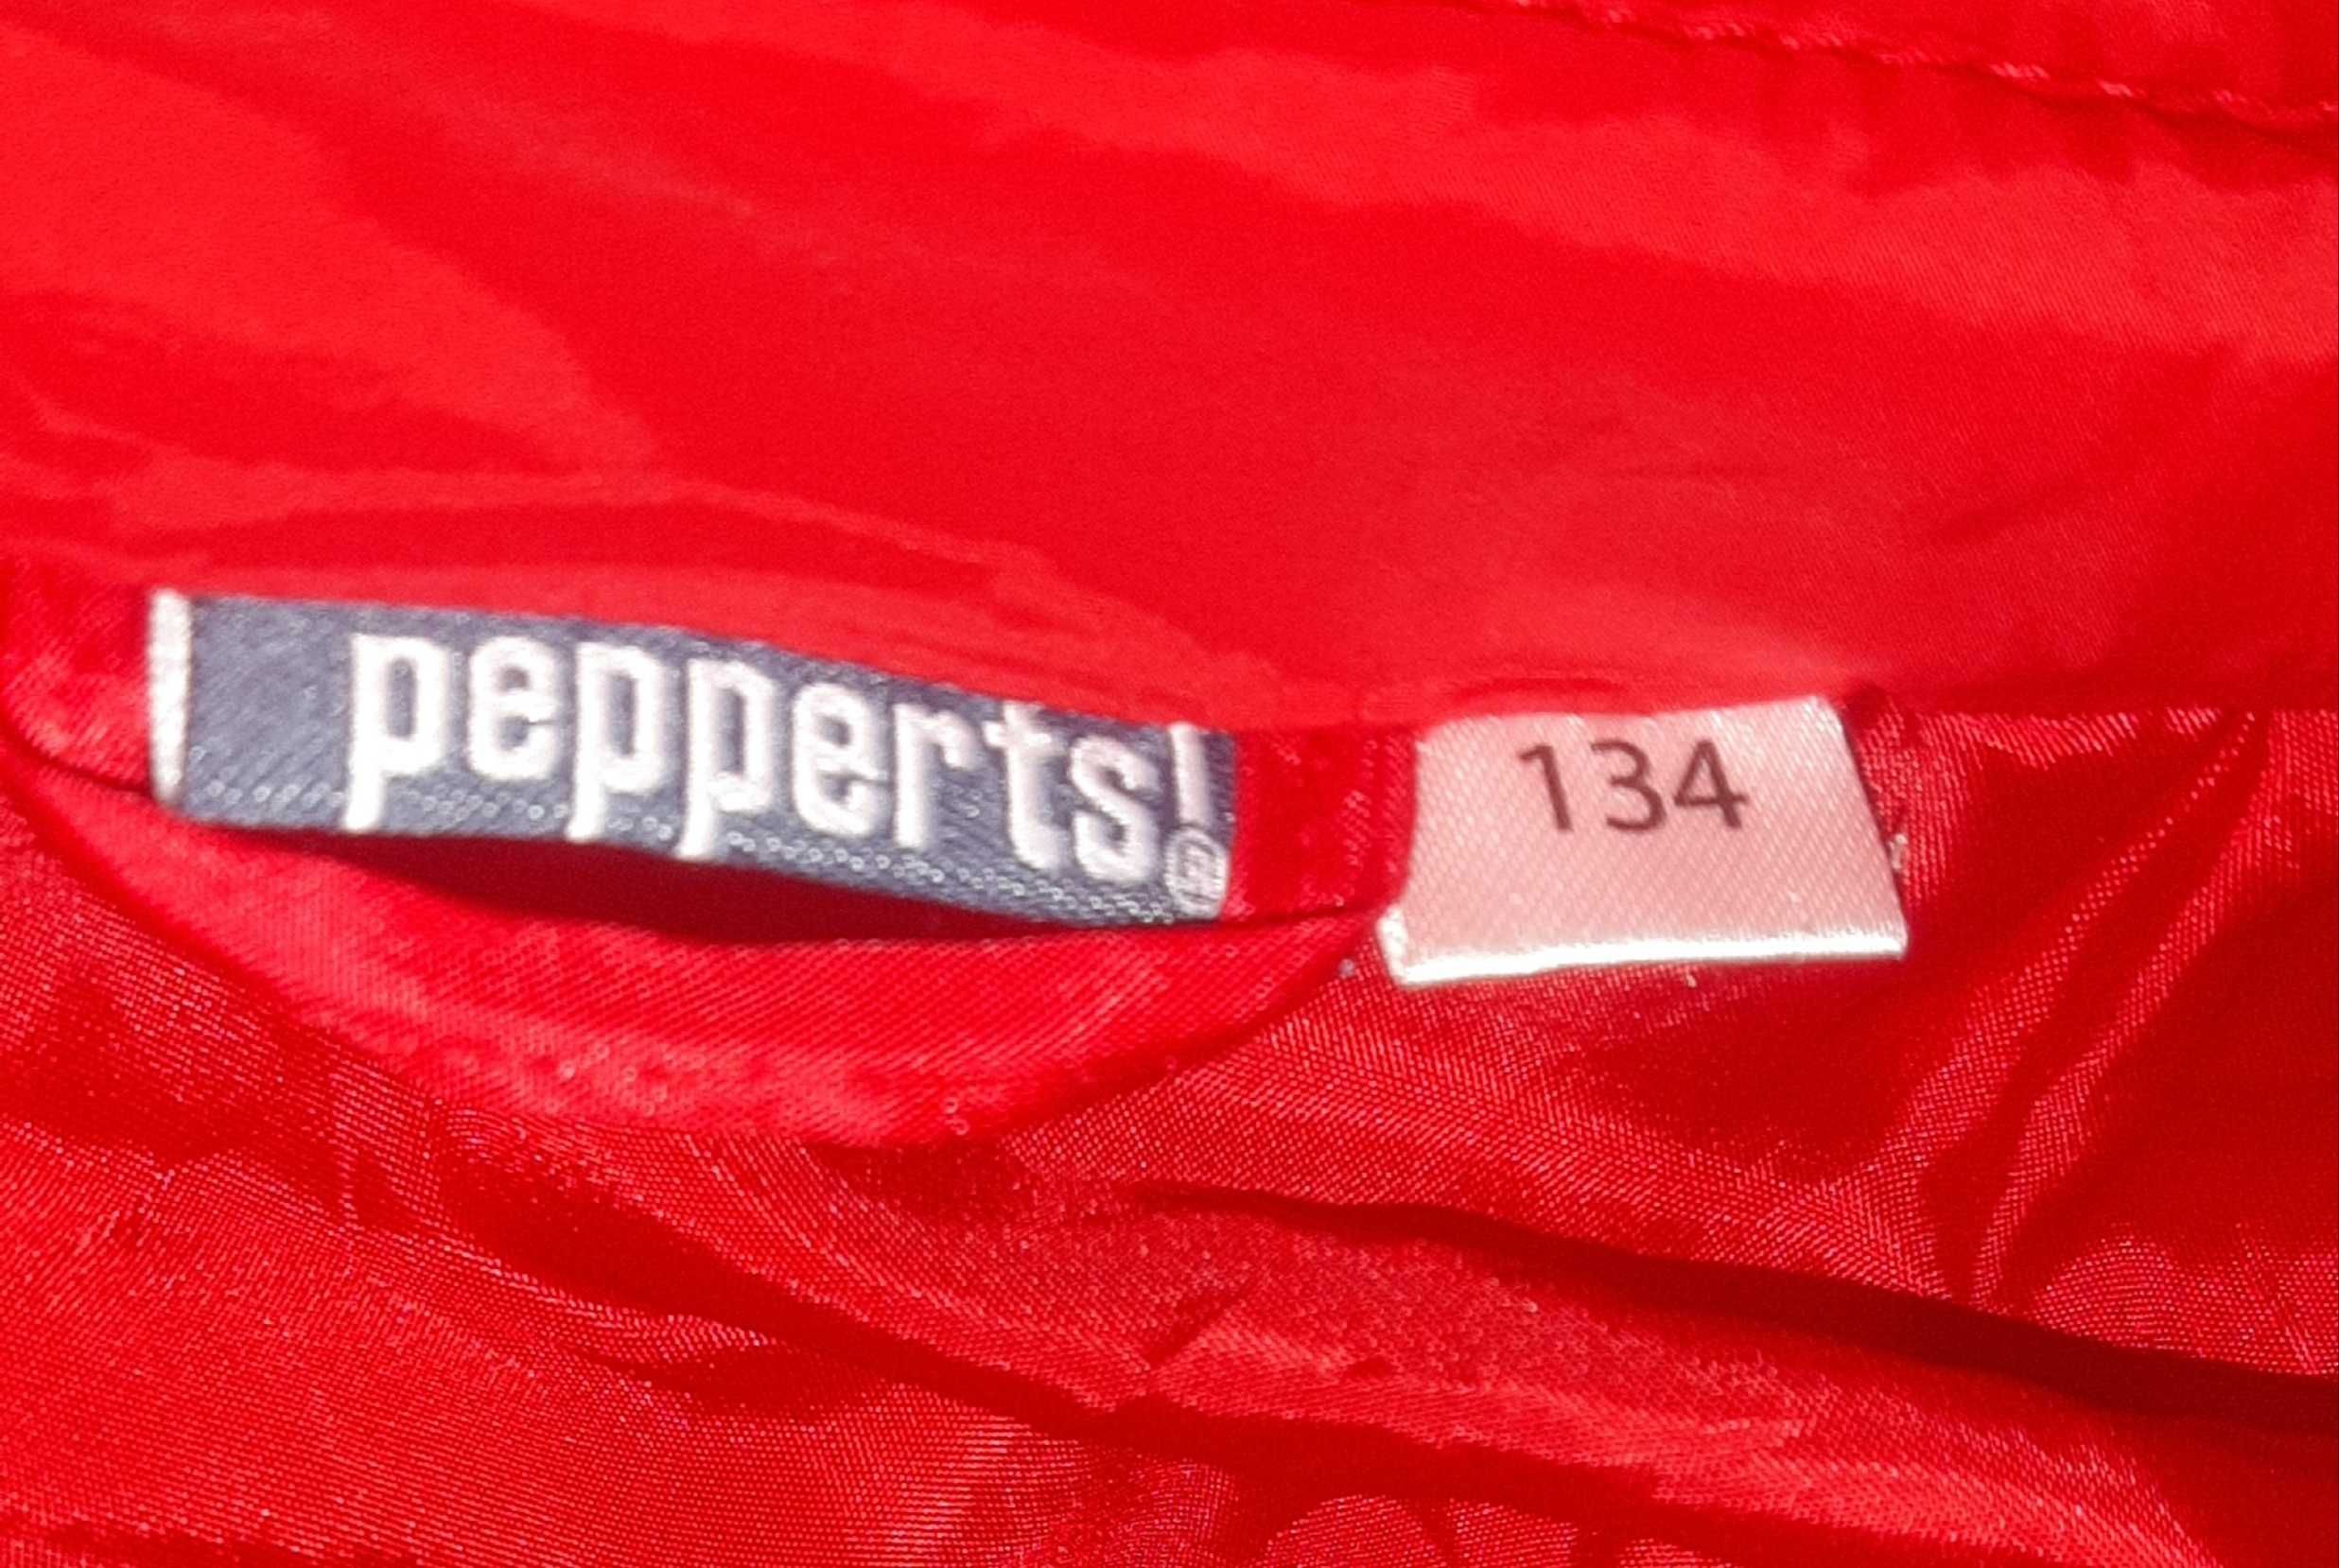 Sprzedam kurtkę pikowaną używaną dla chłopca firmy Pepperts